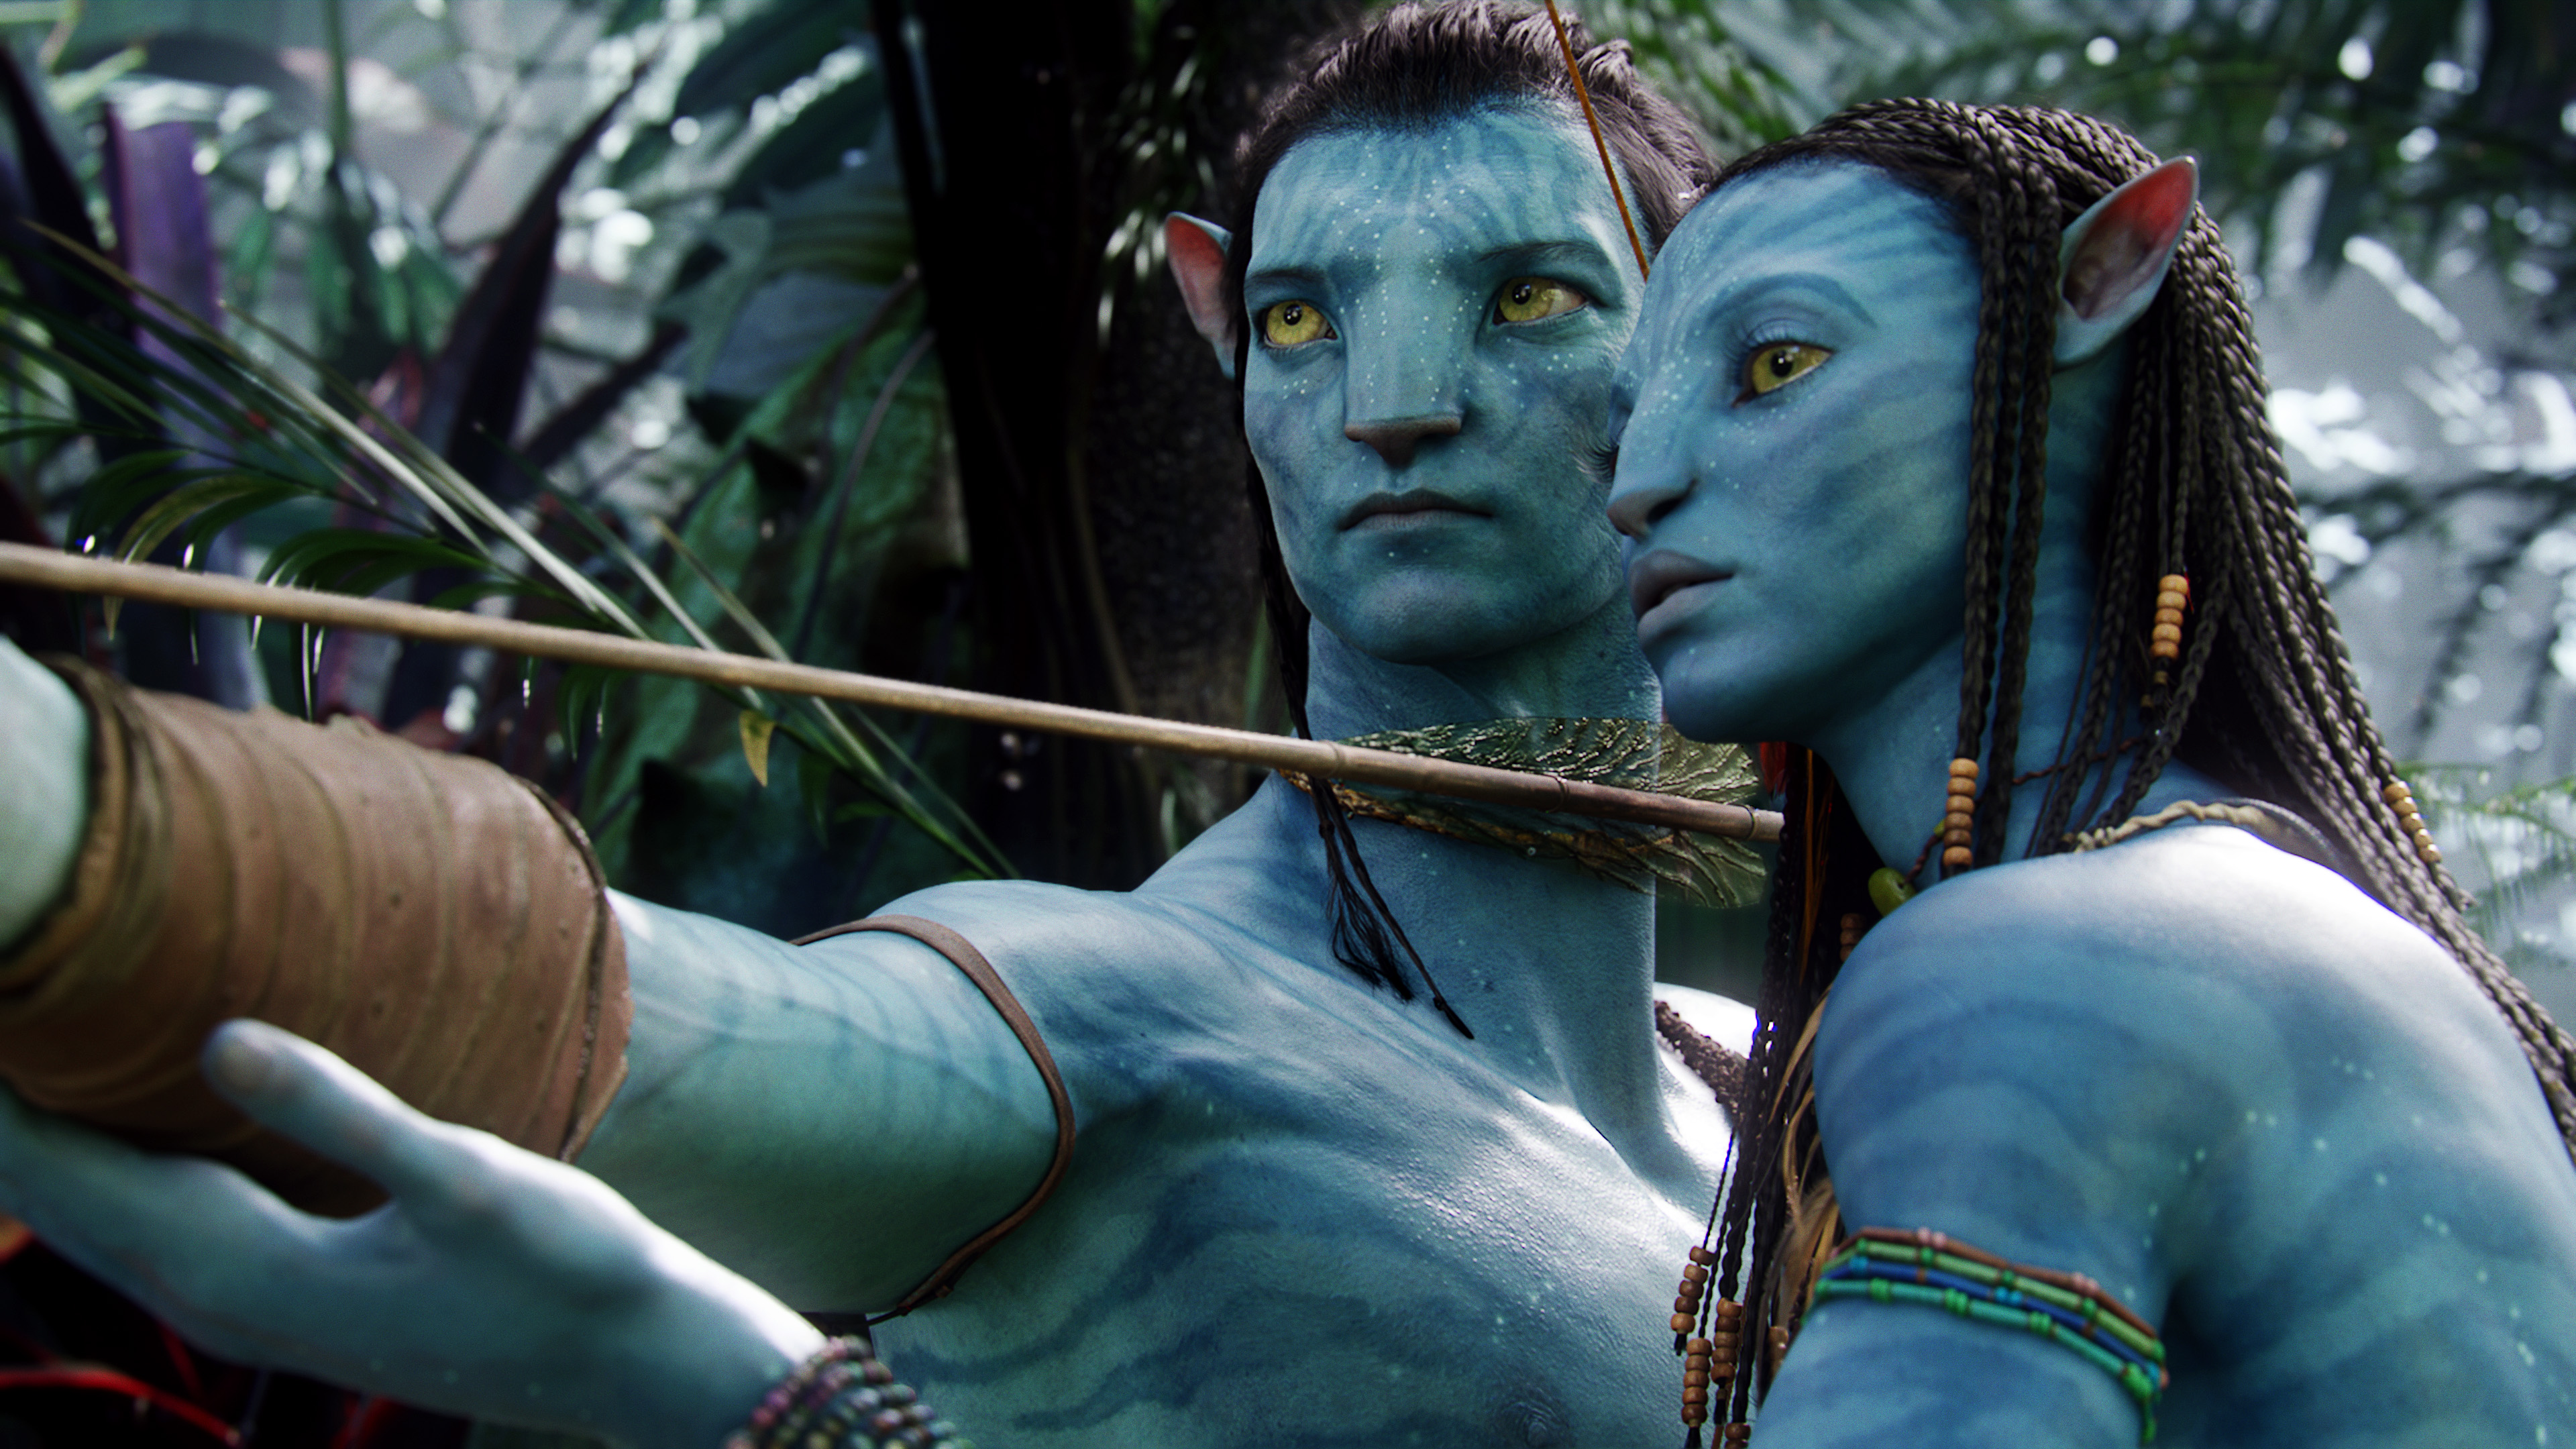 Chủ đề gia đình luôn là một chủ đề nóng trong bất cứ bộ phim nào. Với bộ phim Avatar, việc hình dung về tình cảm gia đình giữa nhân vật đã được cập nhật rất rõ ràng và hợp lý. Câu chuyện sẽ khiến cho người xem cảm thấy như thấy được phần nào hình ảnh của chính mình trong nhân vật.